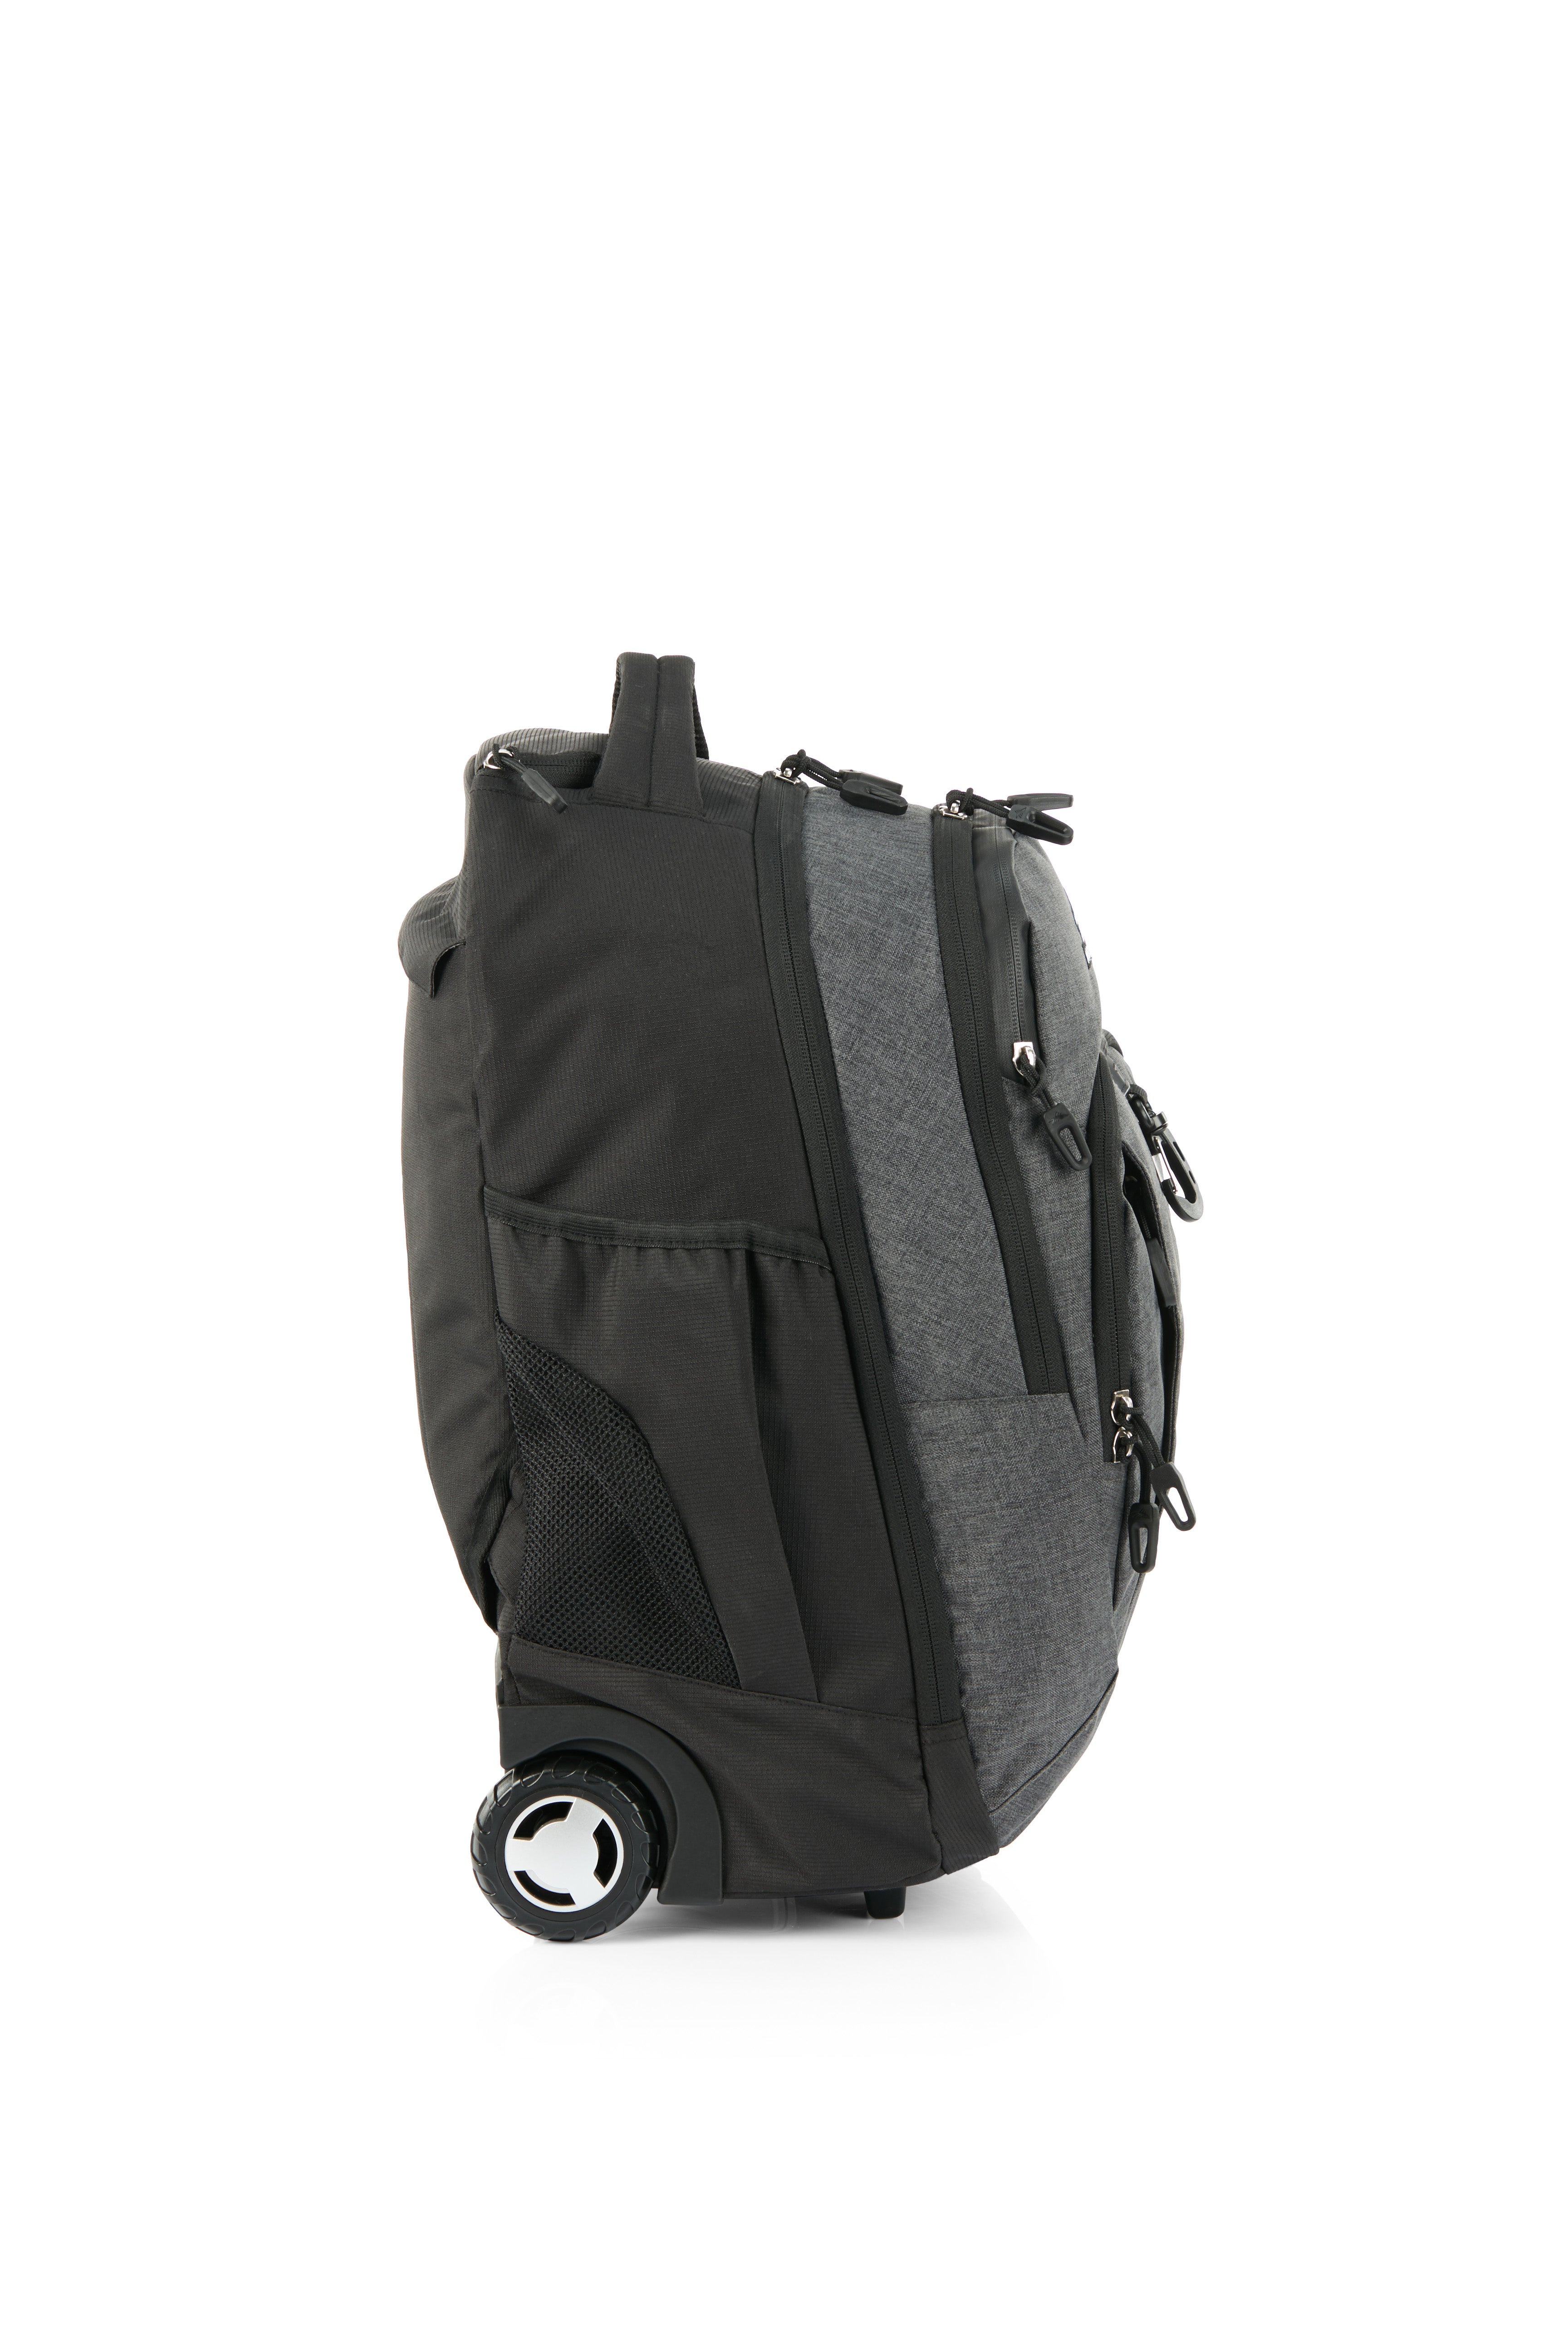 High Sierra - Jarvis Pro backpack on wheels - Black-6